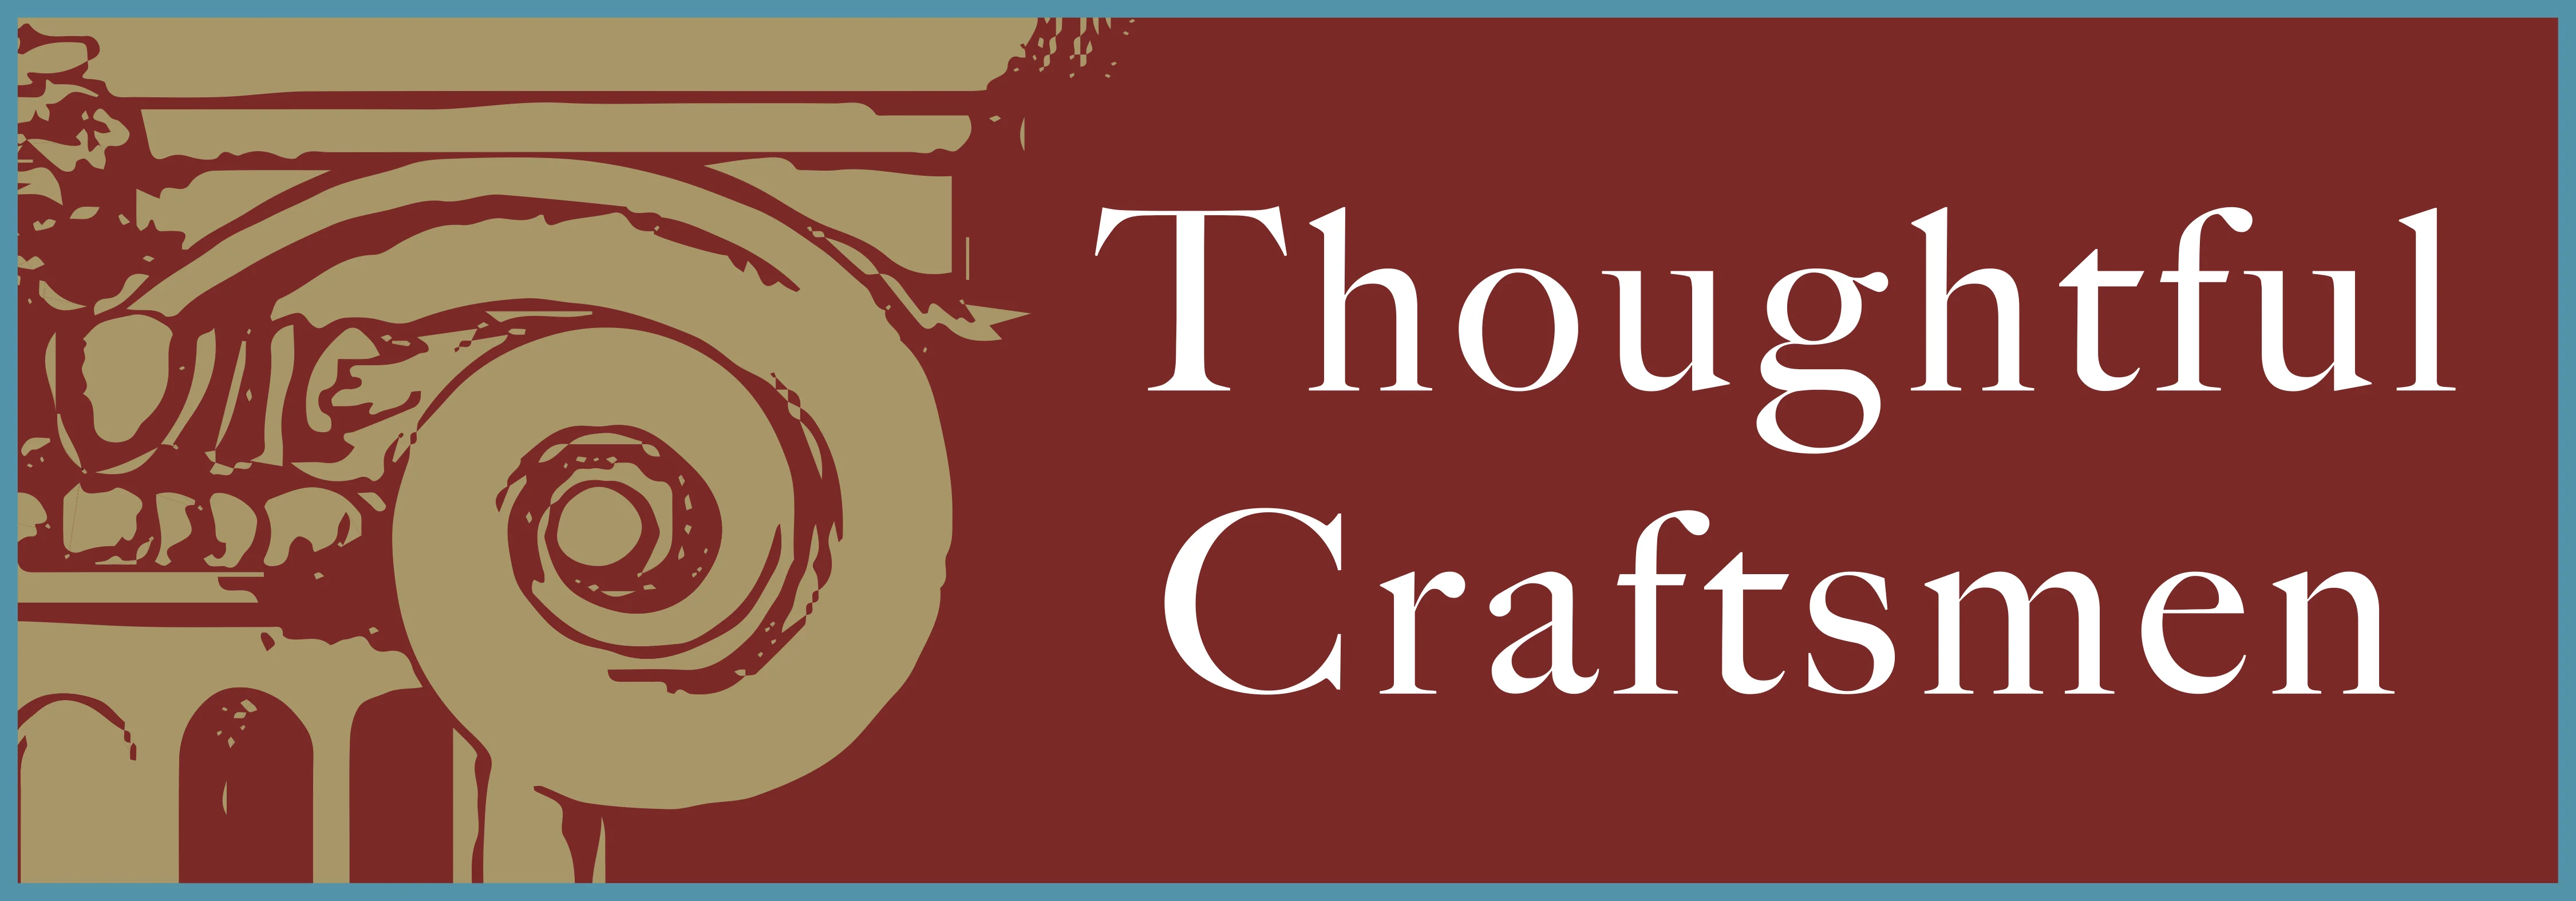 The Thoughtful Craftsmen logo